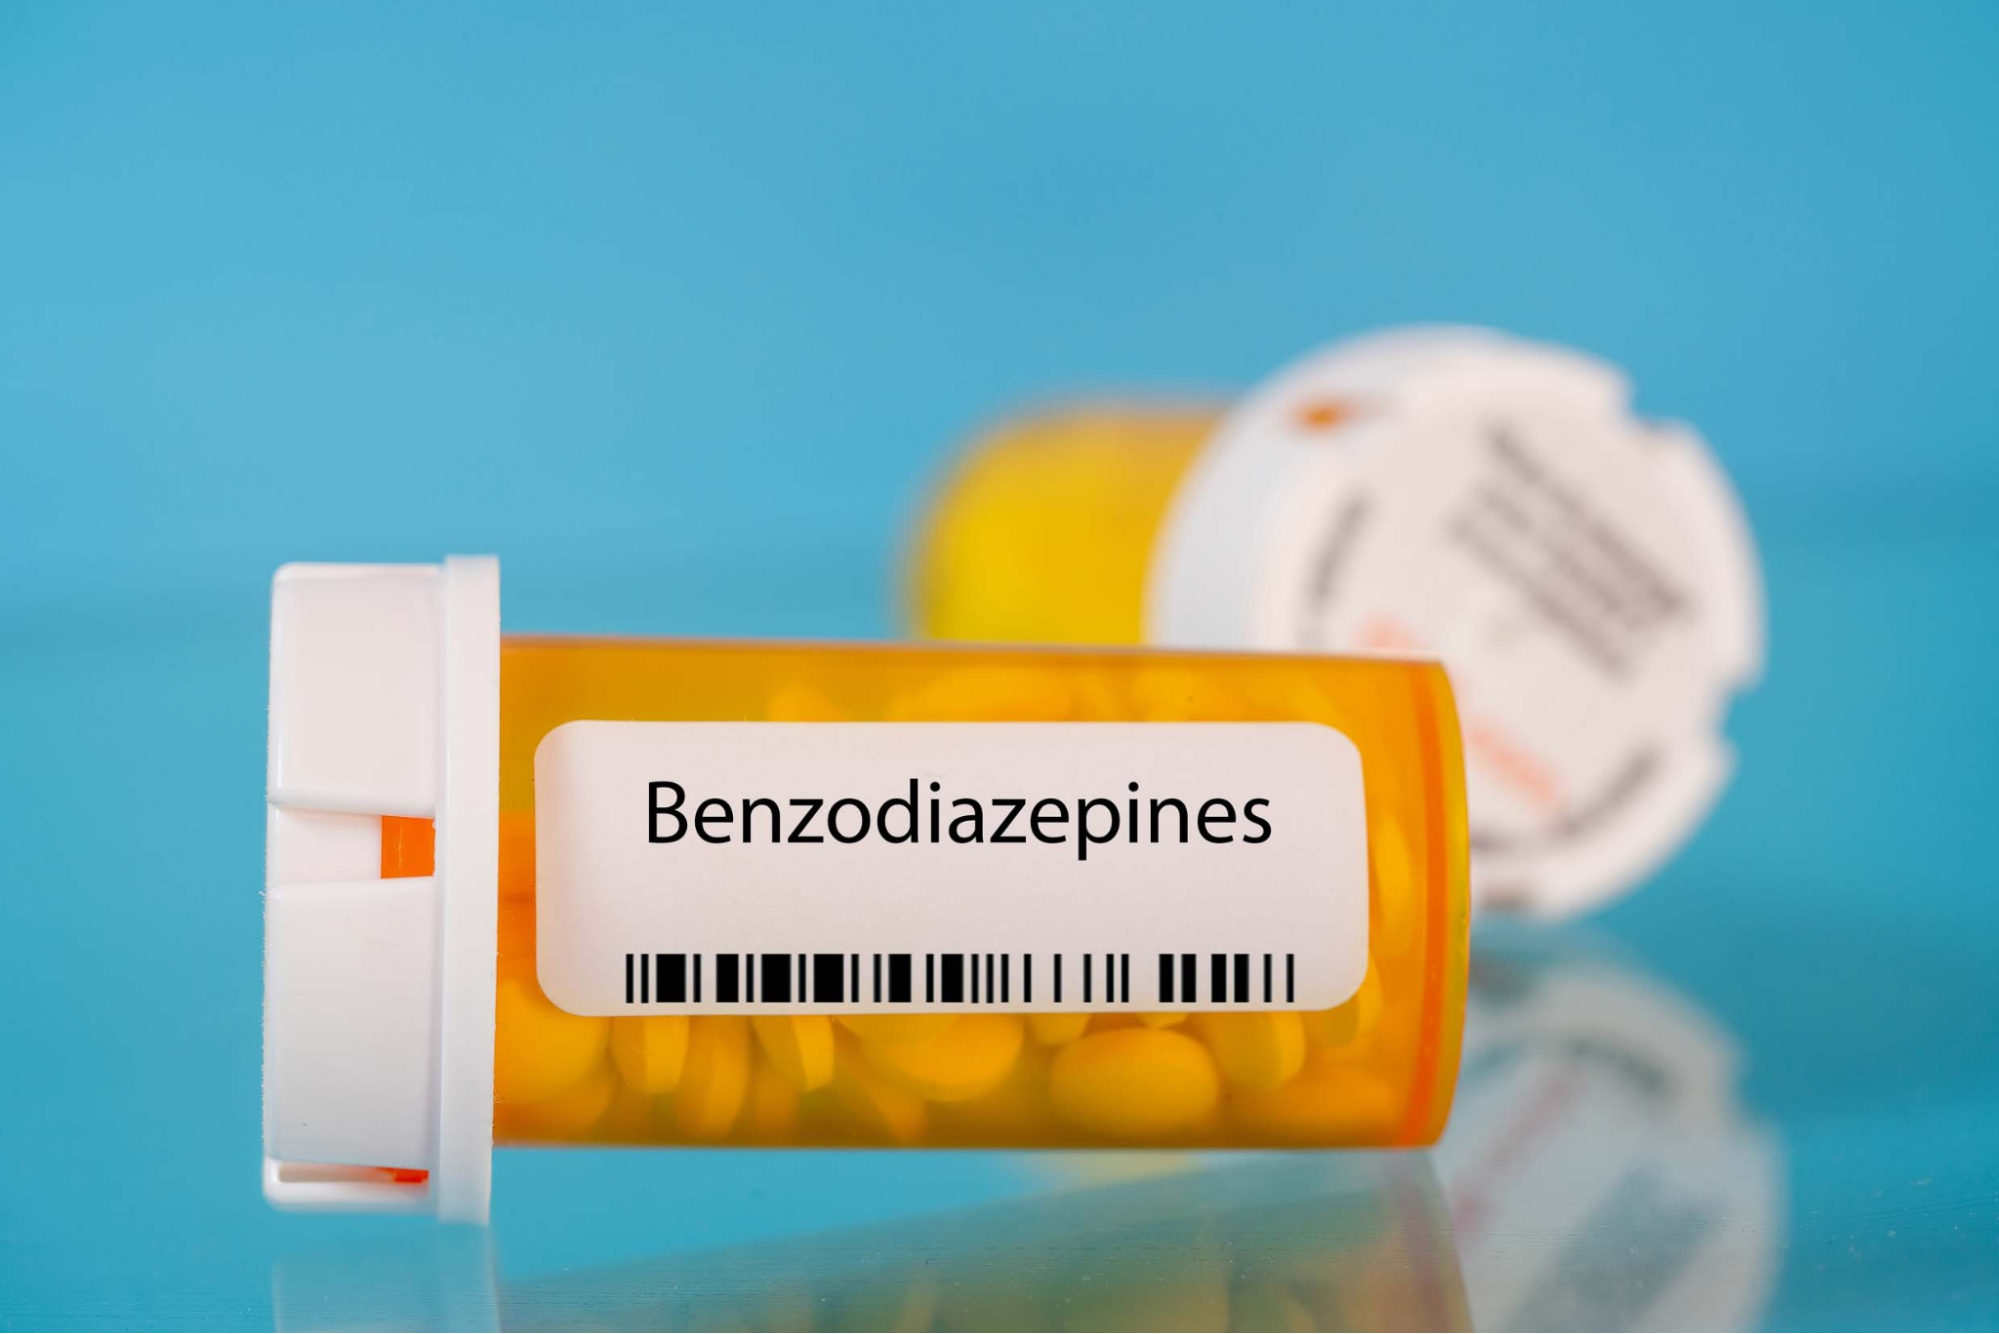 Benzodiazepin chỉ được sử dụng trong thời gian ngắn vì có thể dẫn đến nghiện thuốc.